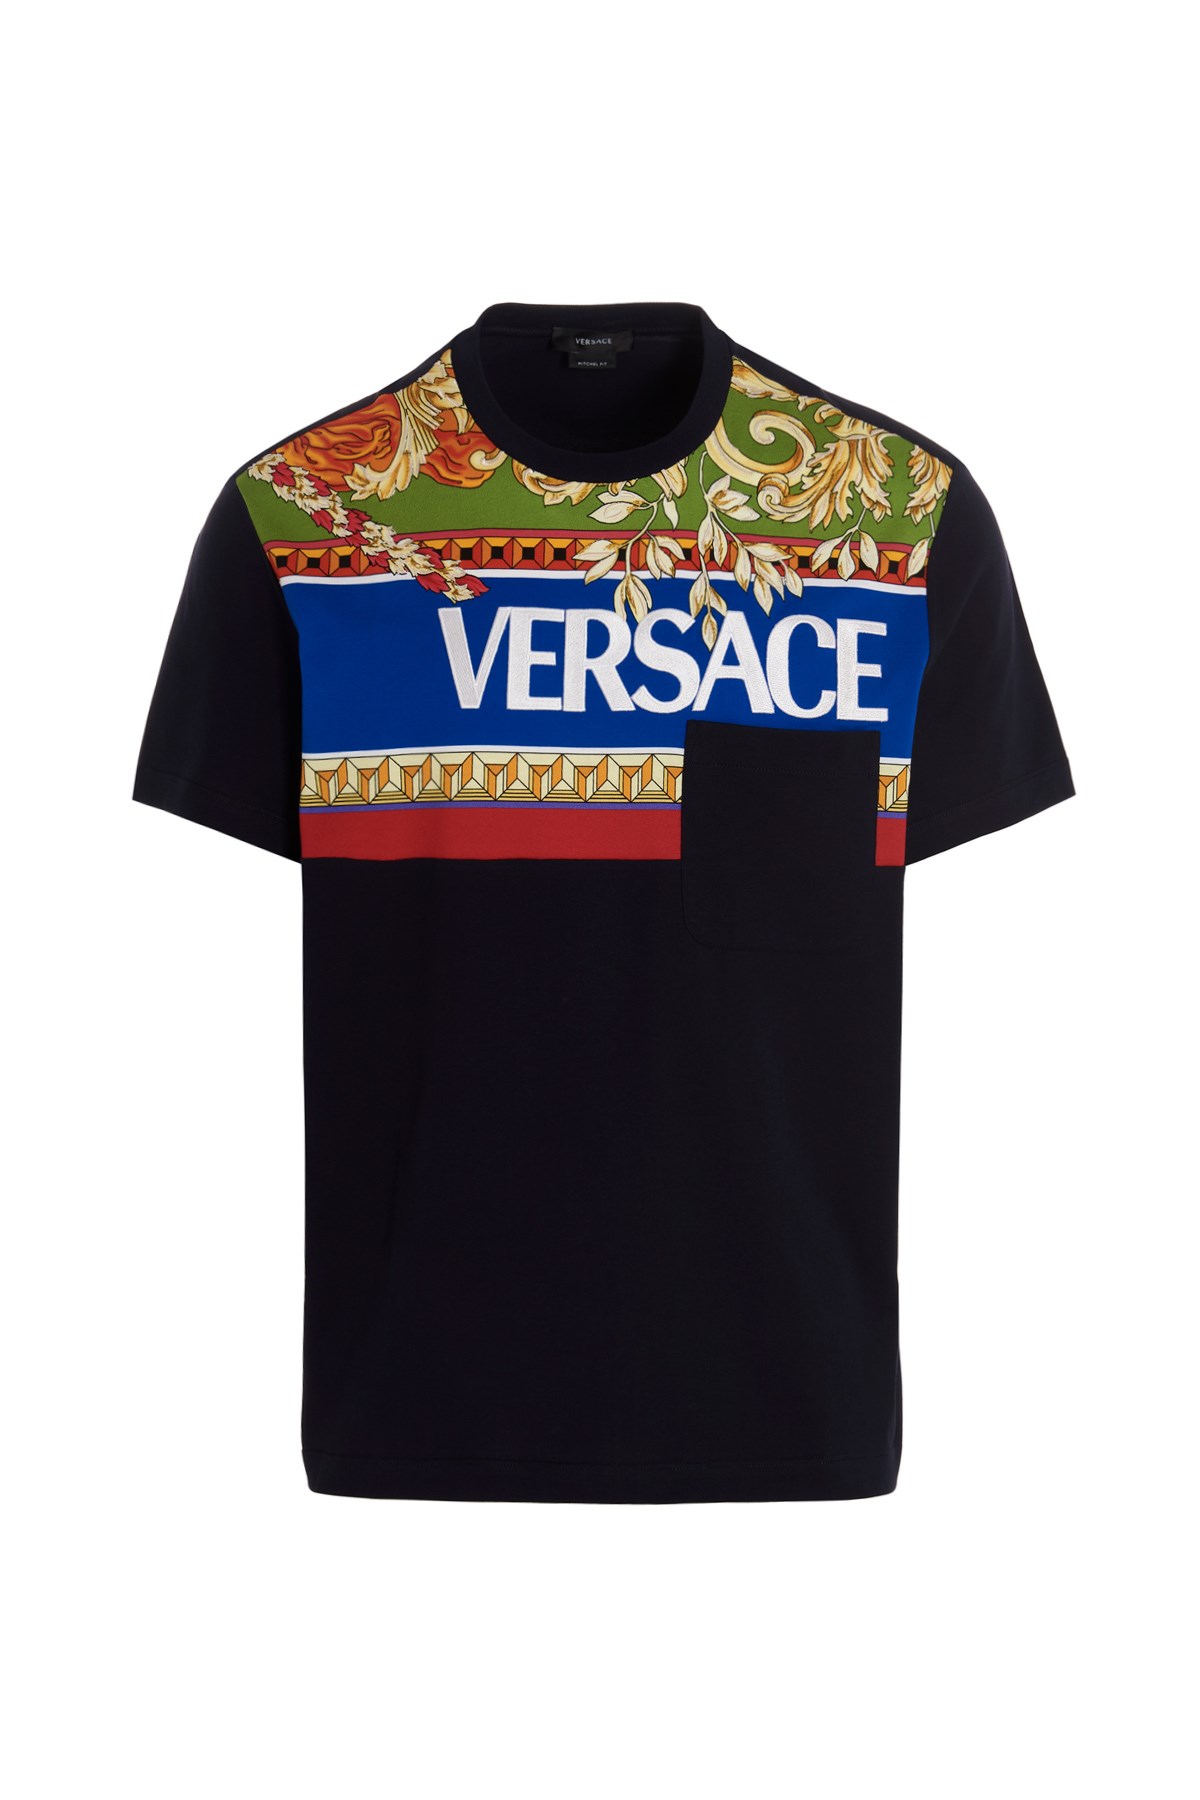 VERSACE Logo T-Shirt